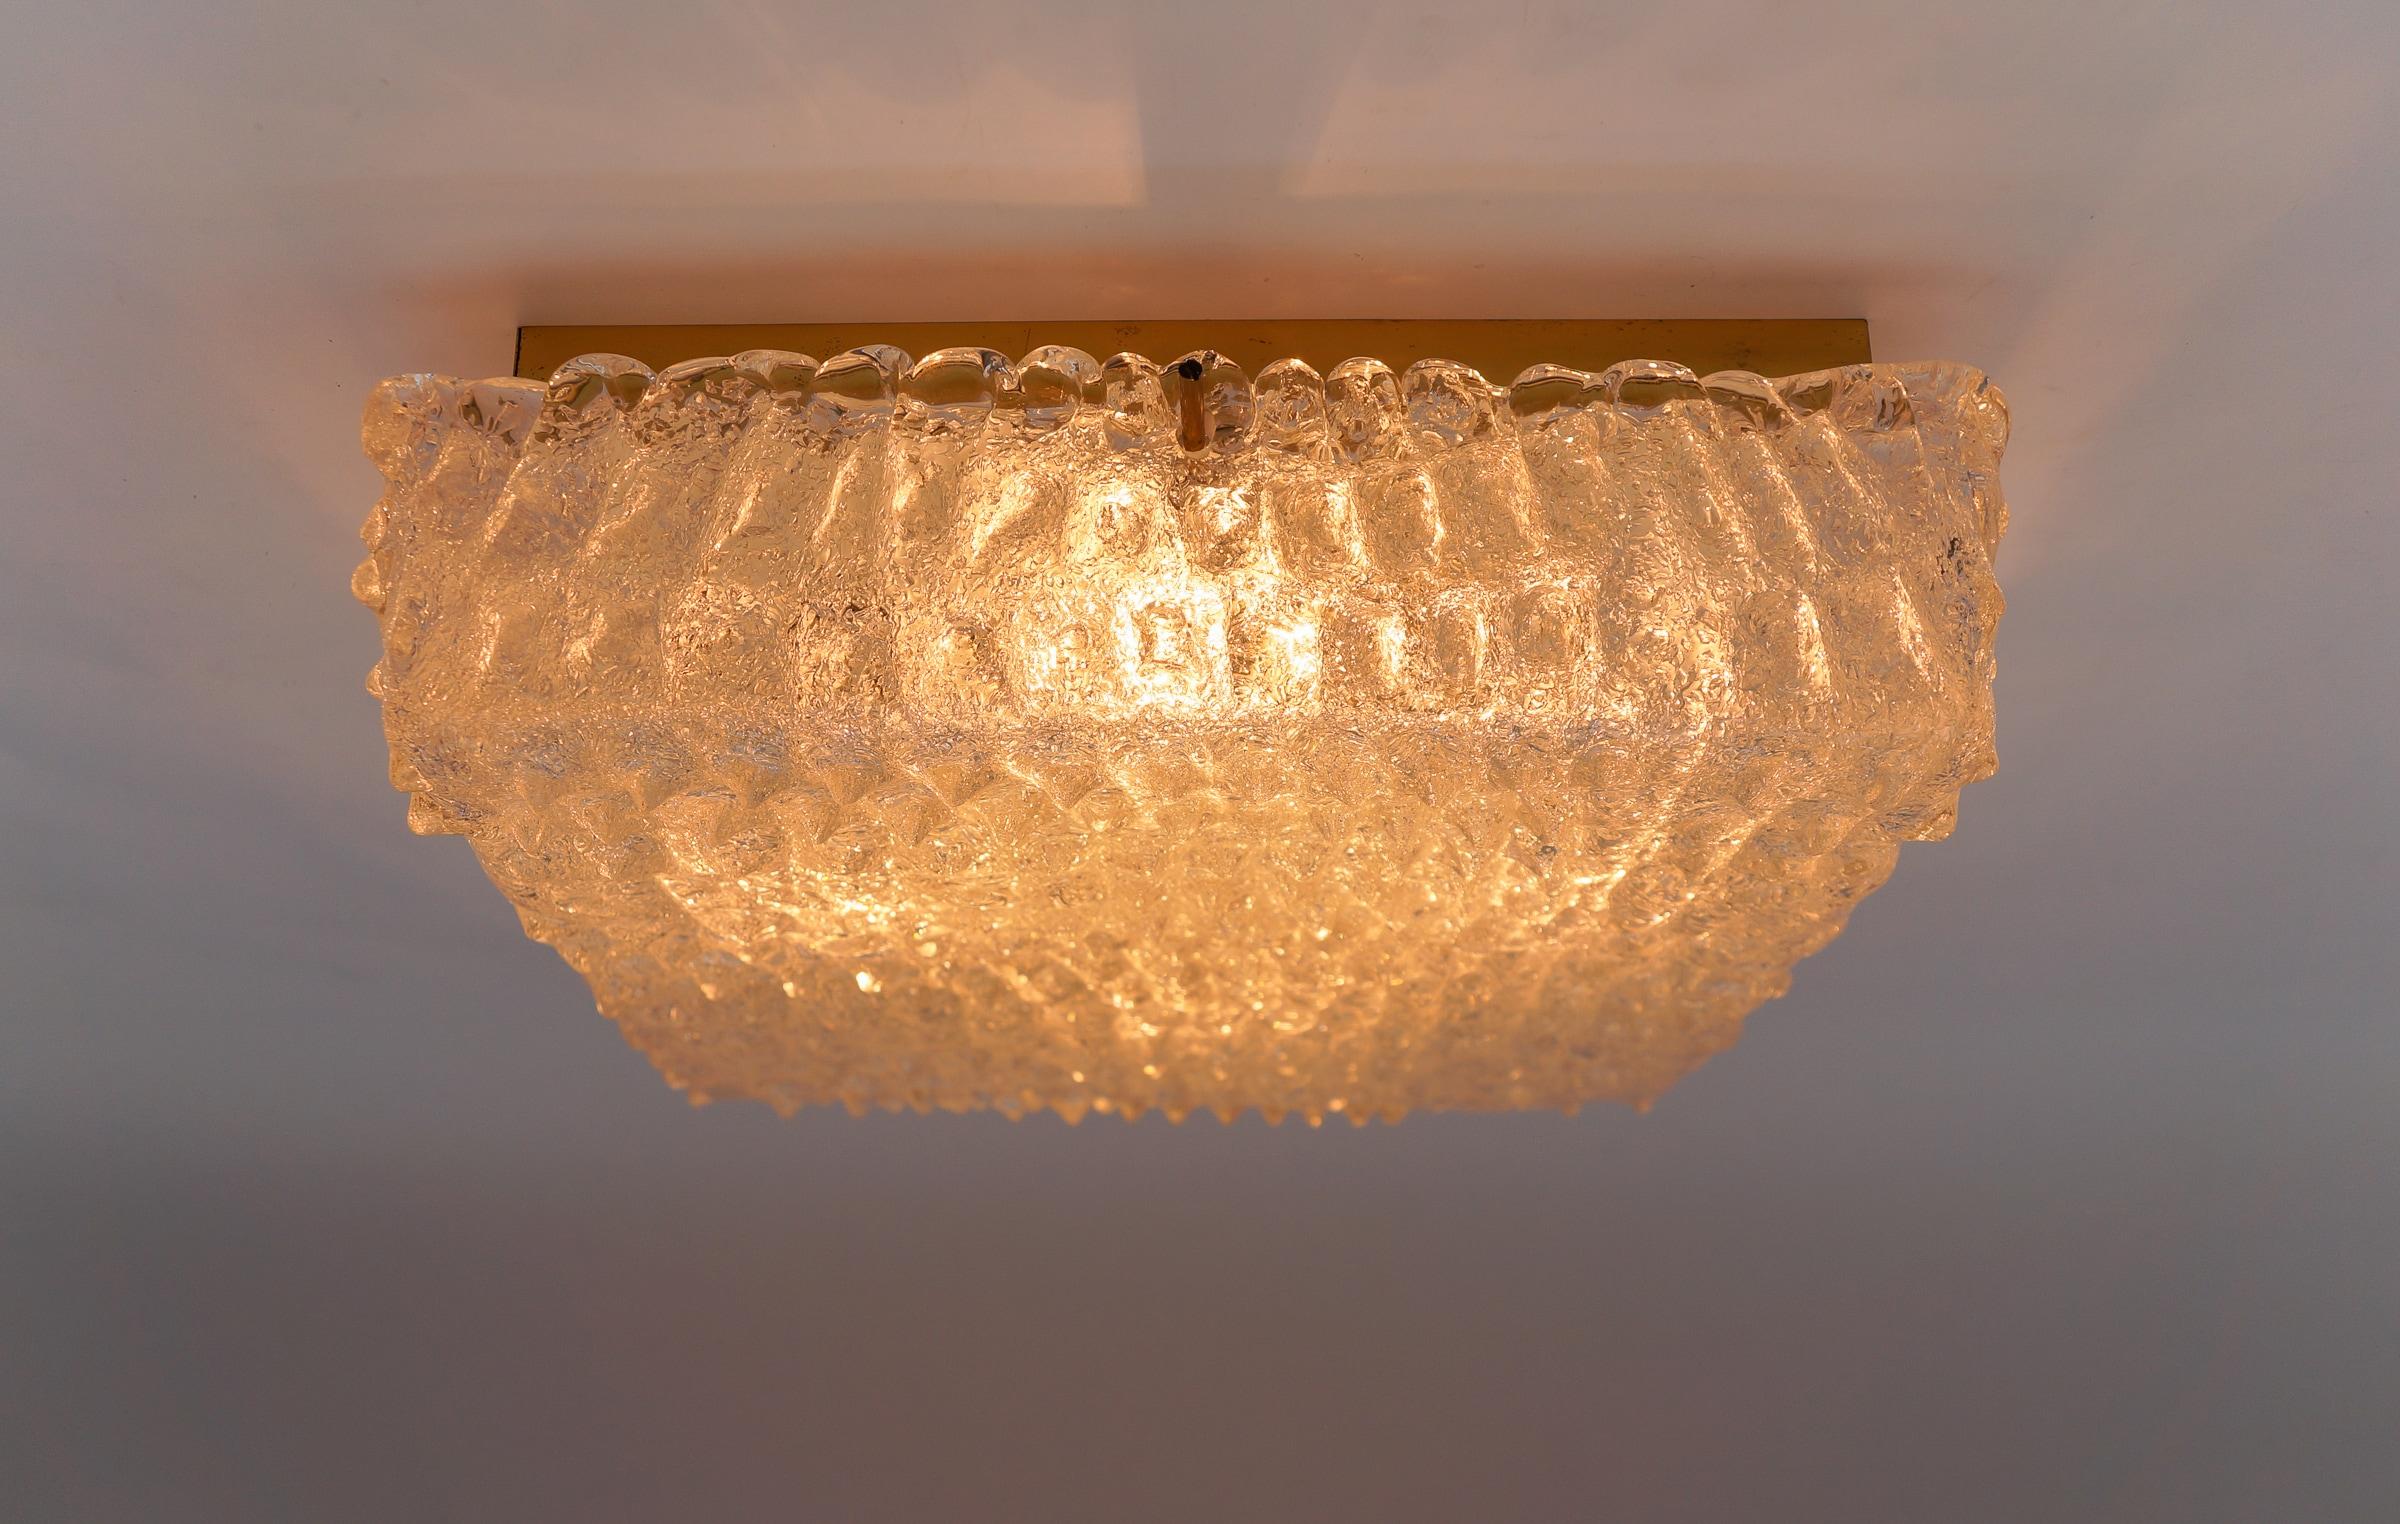 Wunderschöne Murano-Glasleuchte mit Krokodilhaut-Oberflächenstruktur von Hillebrand 1960er Jahre, Deutschland

Die Lampe ist mit 5x E14 Edison Schraubbirnen ausgestattet. Es ist verkabelt und in funktionstüchtigem Zustand. Er läuft sowohl mit 110